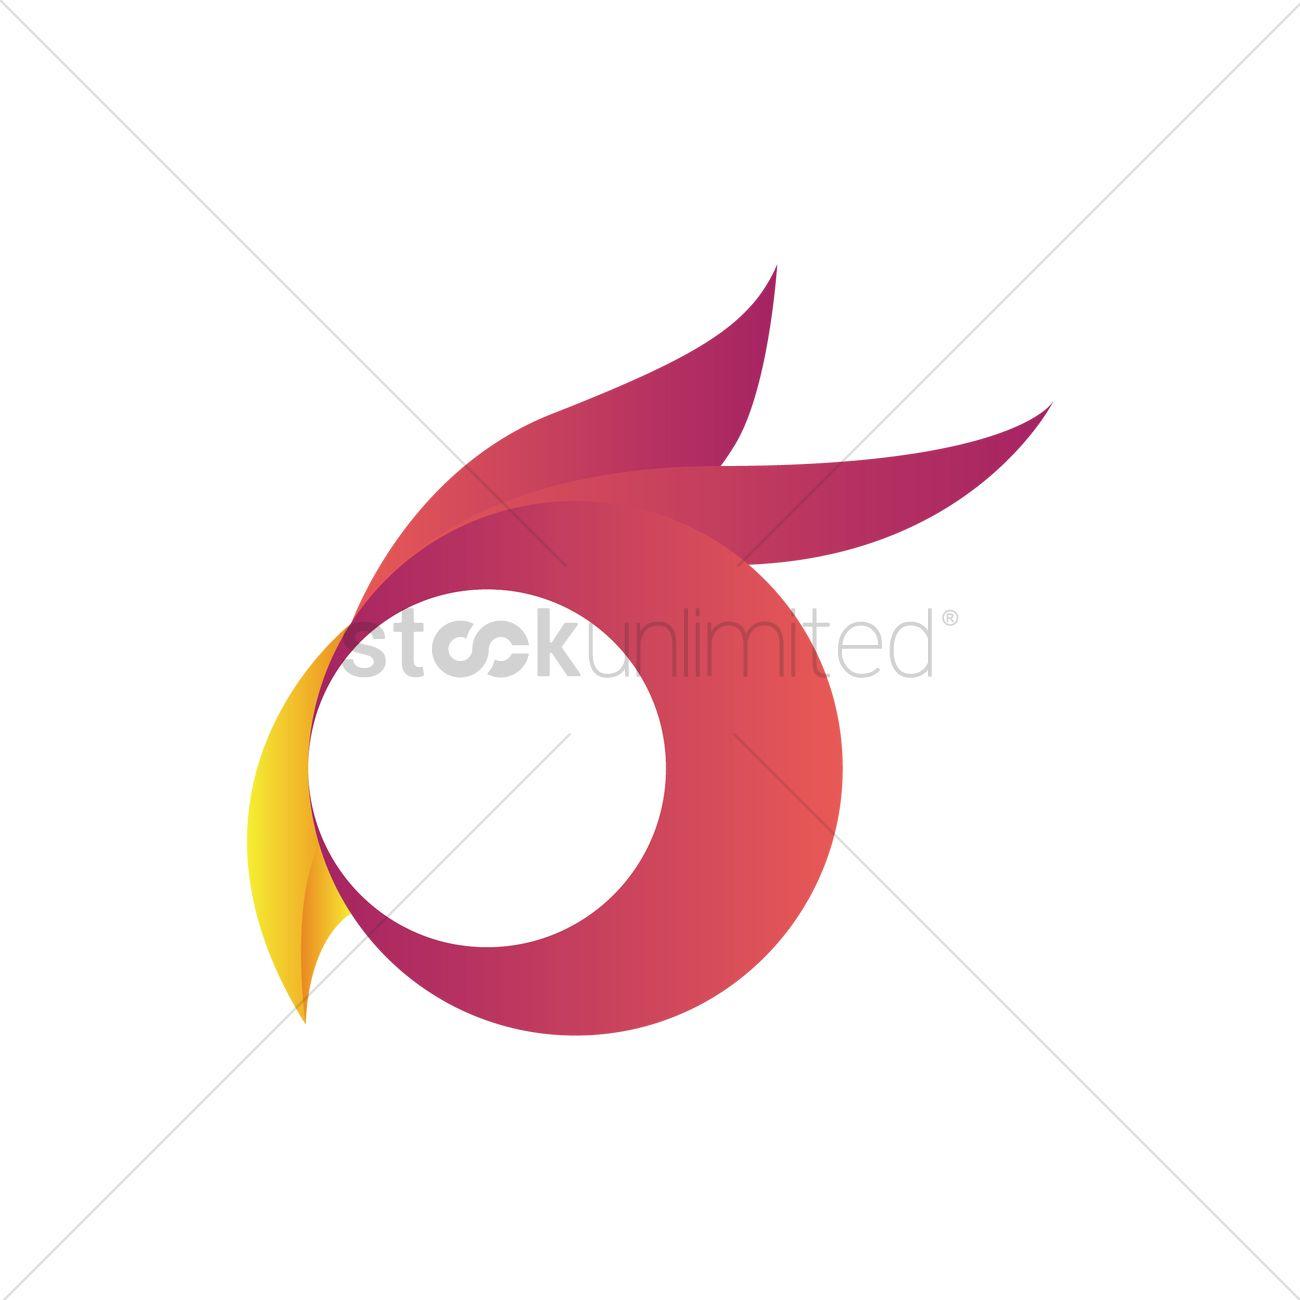 Face in Circle Logo - Bird face logo element Vector Image